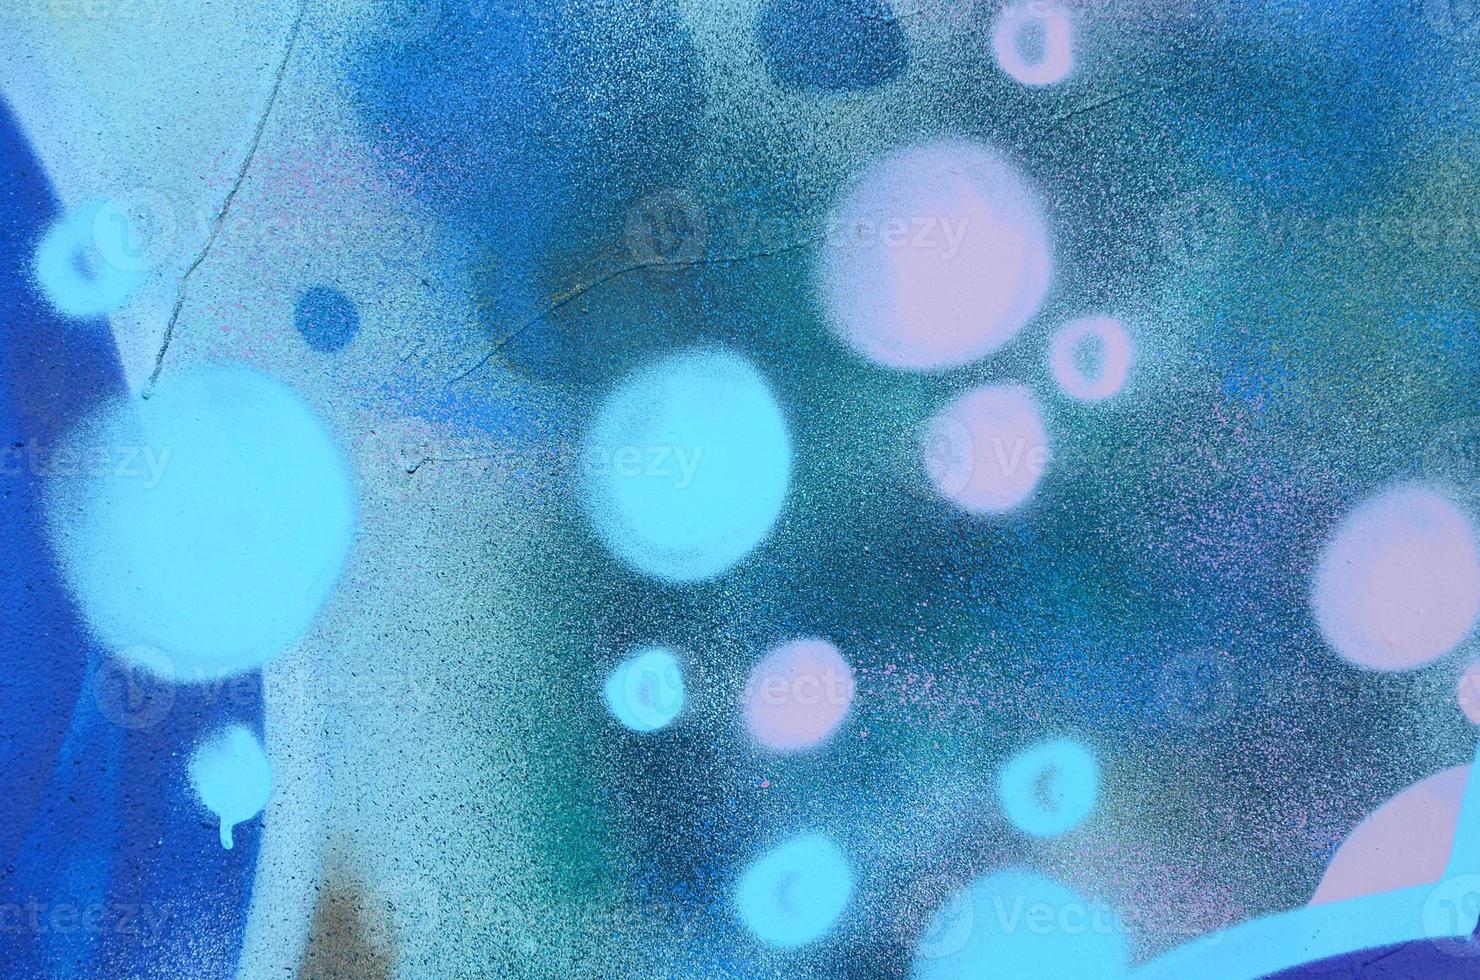 arte de rua. imagem de fundo abstrata de um fragmento de uma pintura de graffiti colorida em tons cósmicos de azul e violeta foto